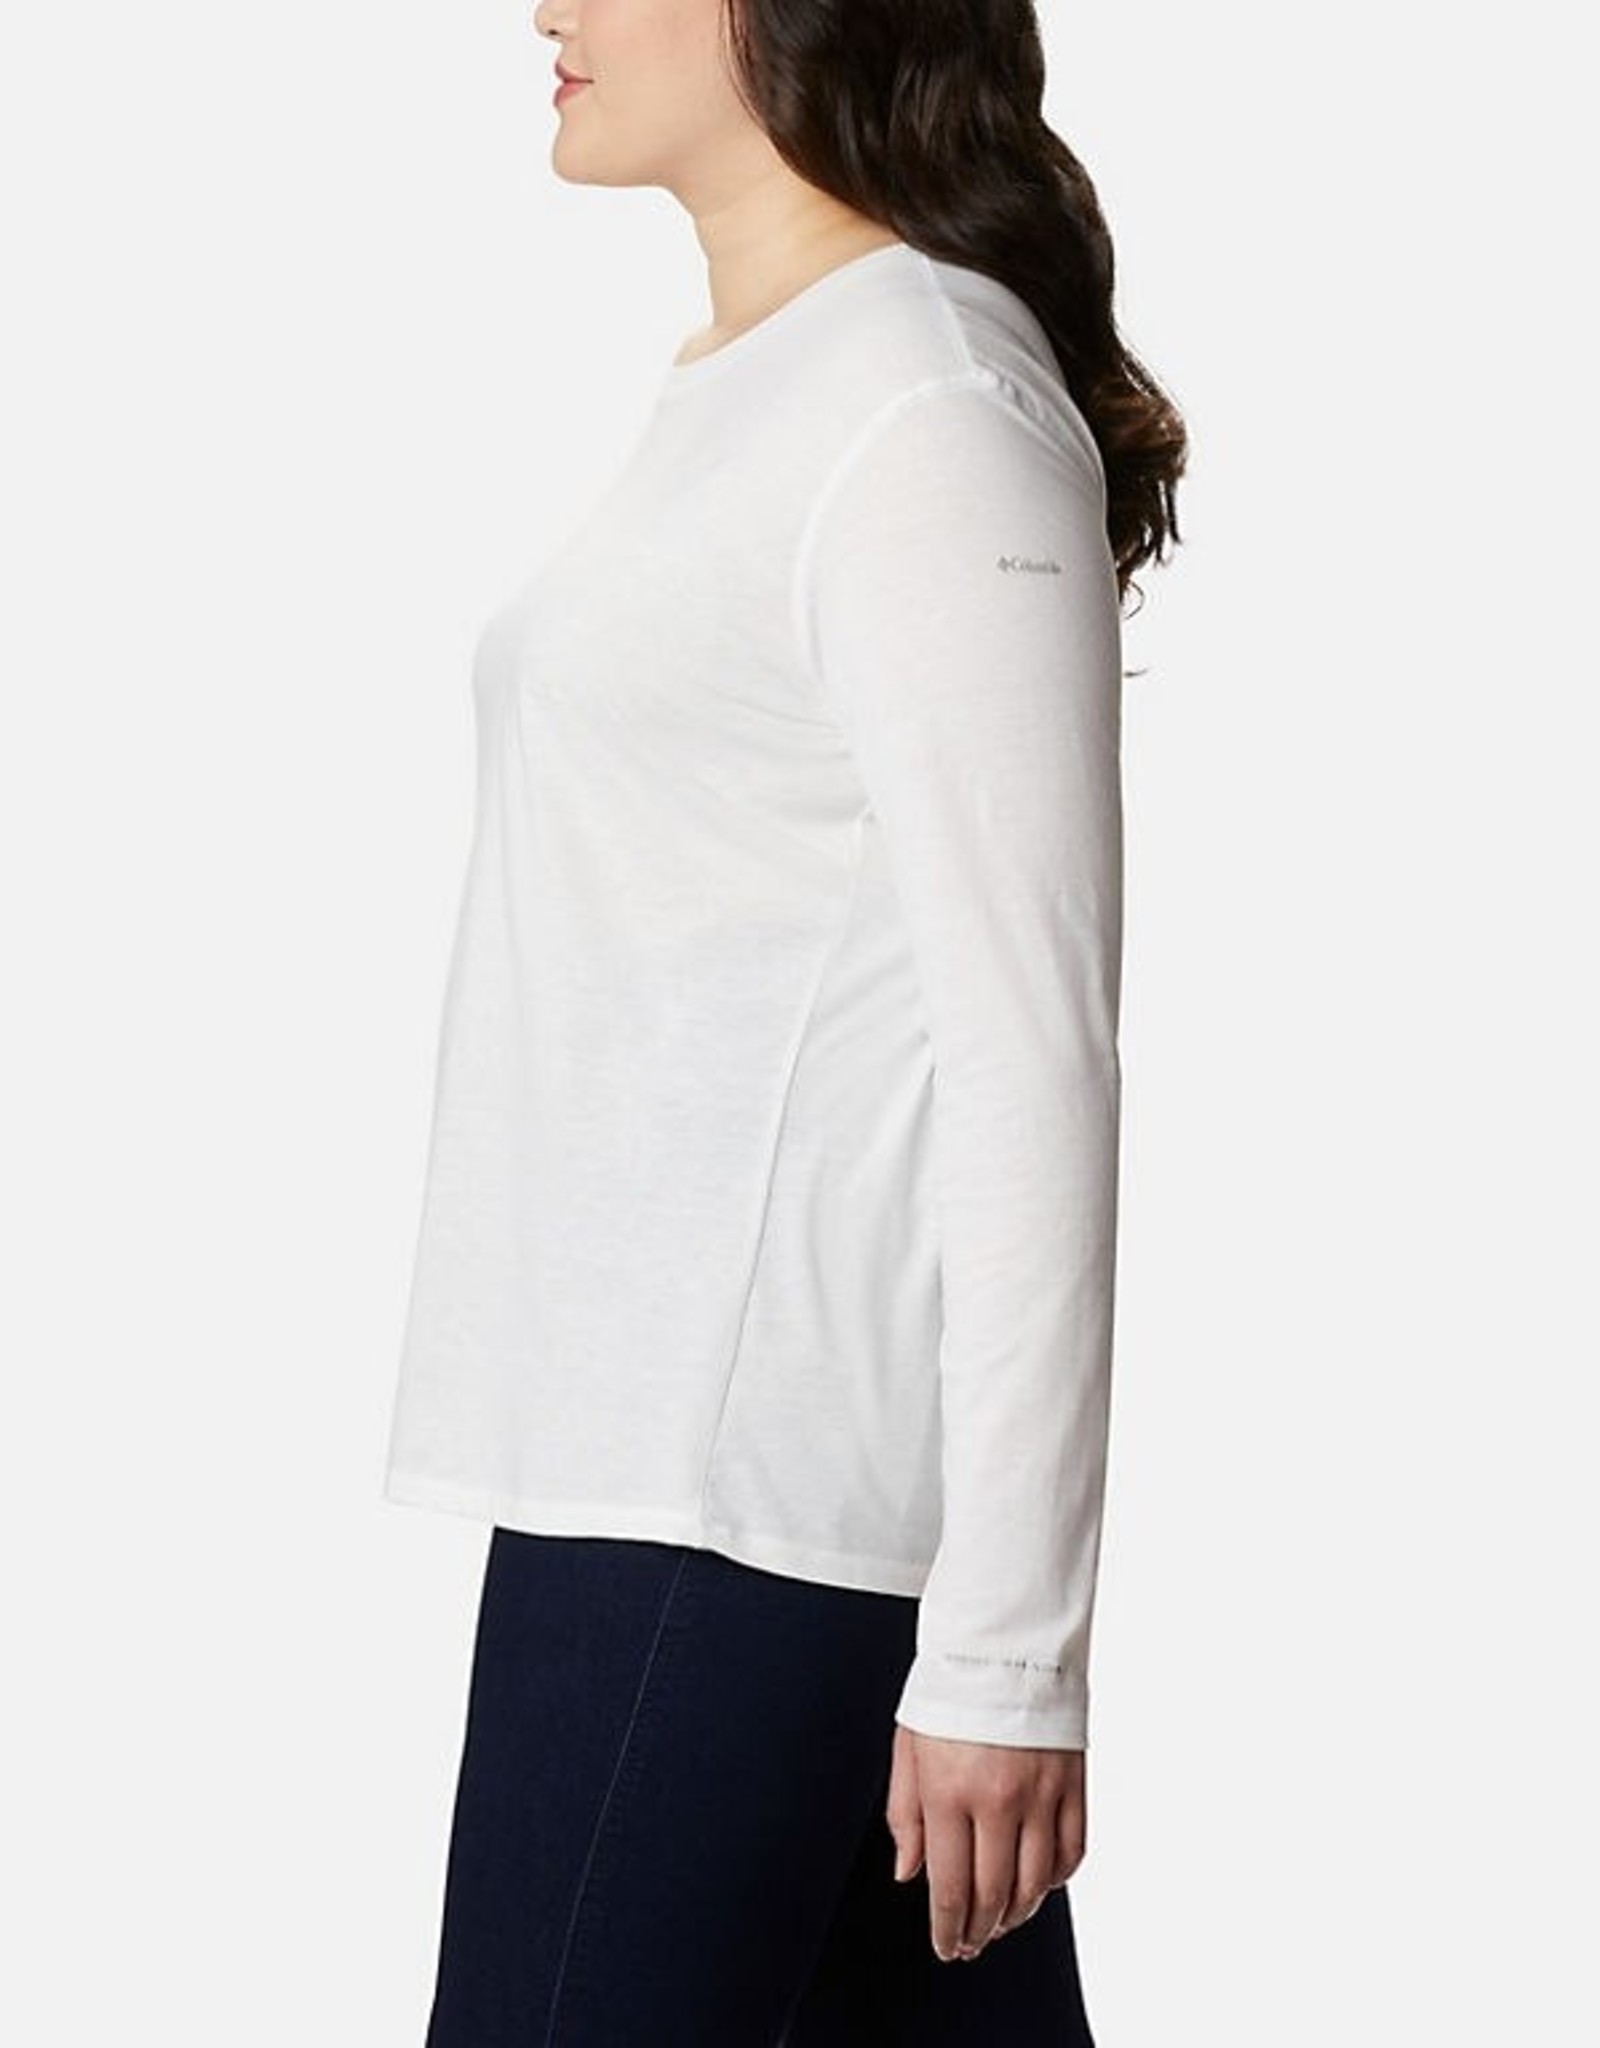 Columbia Women’s Solar Shield Long Sleeve Shirt